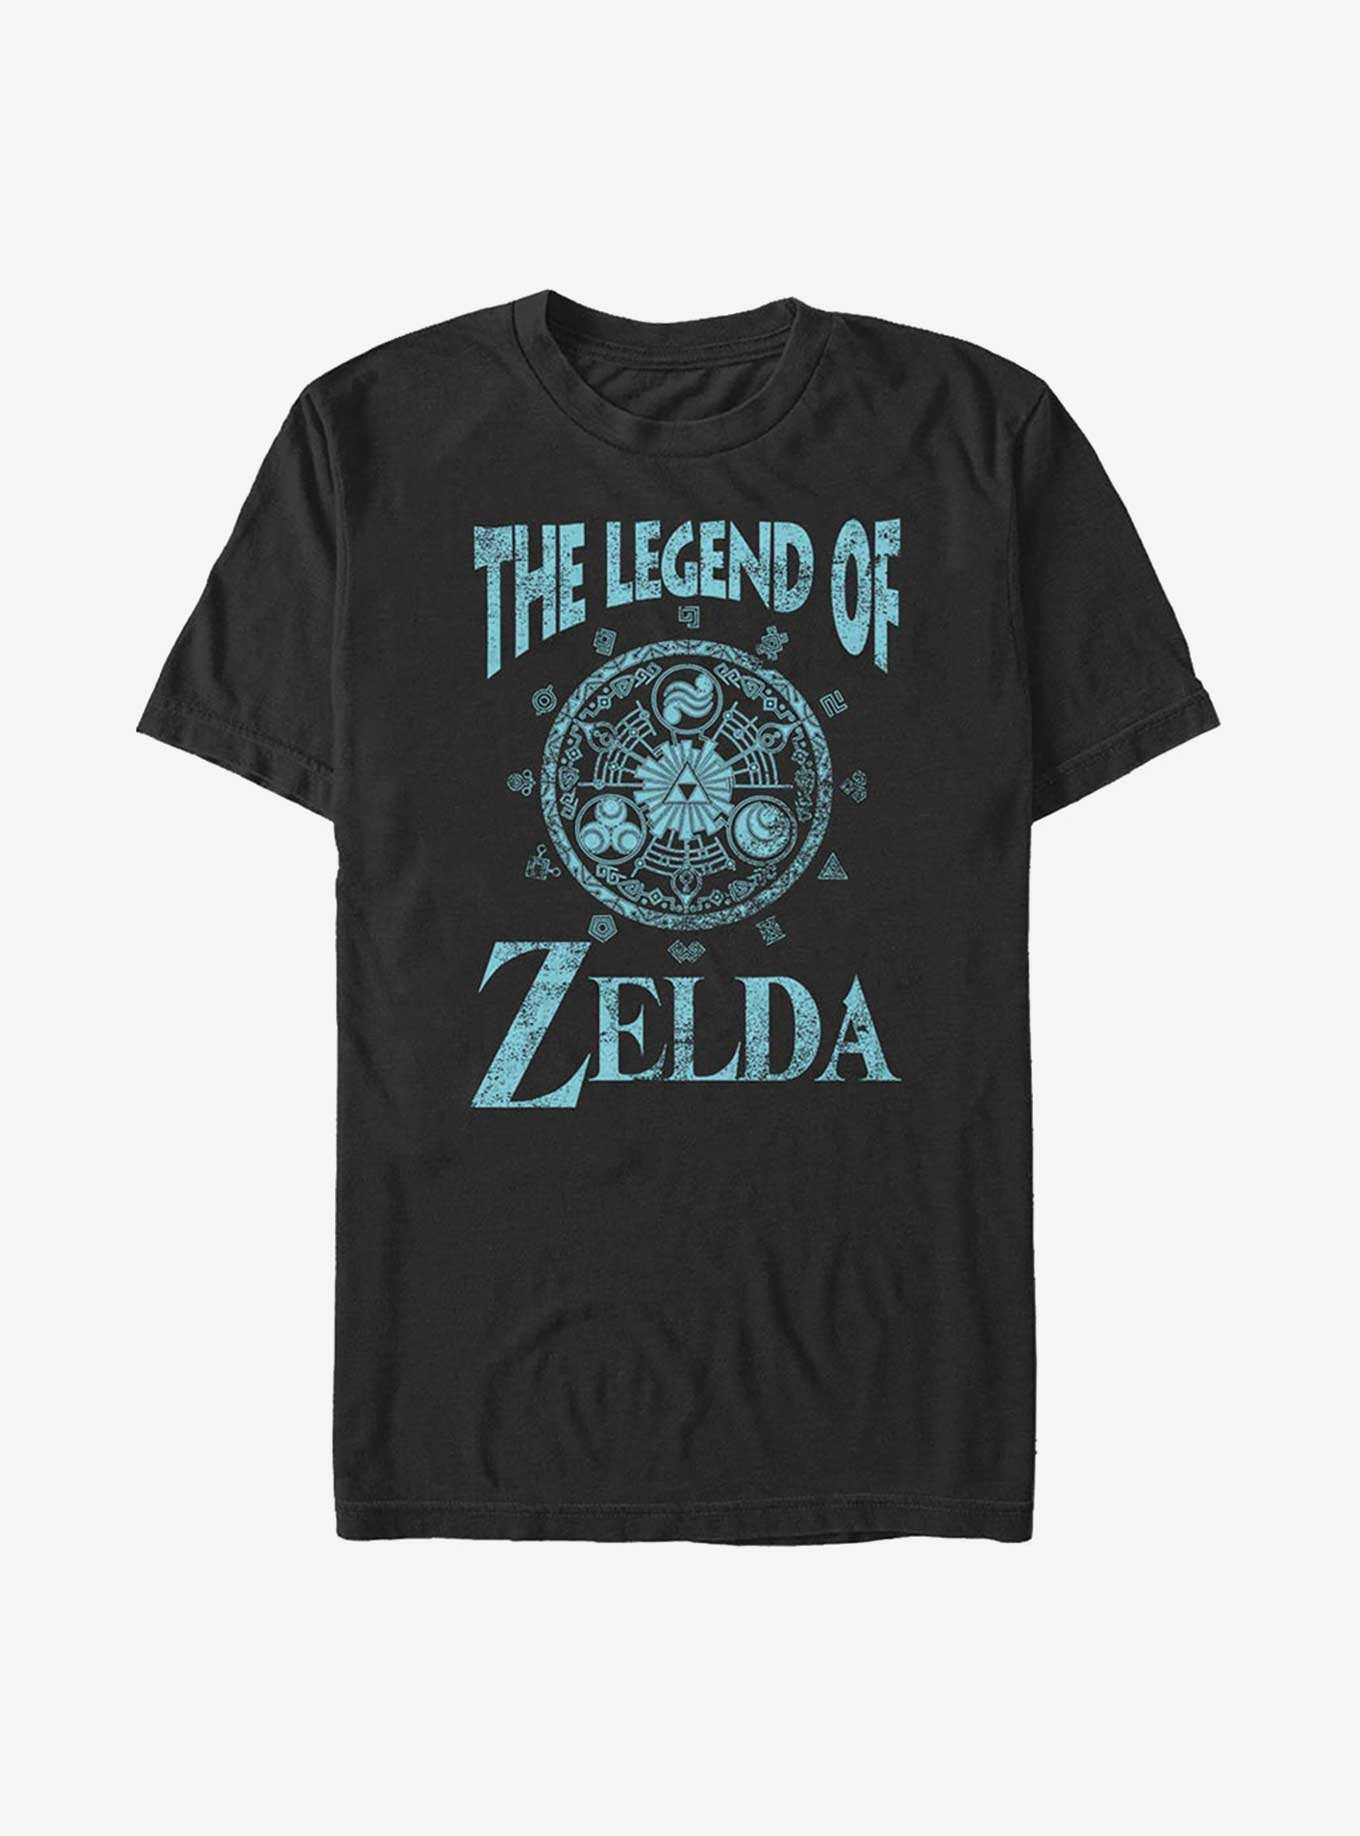 Nintendo The Legend Of Zelda Elements T-Shirt, , hi-res